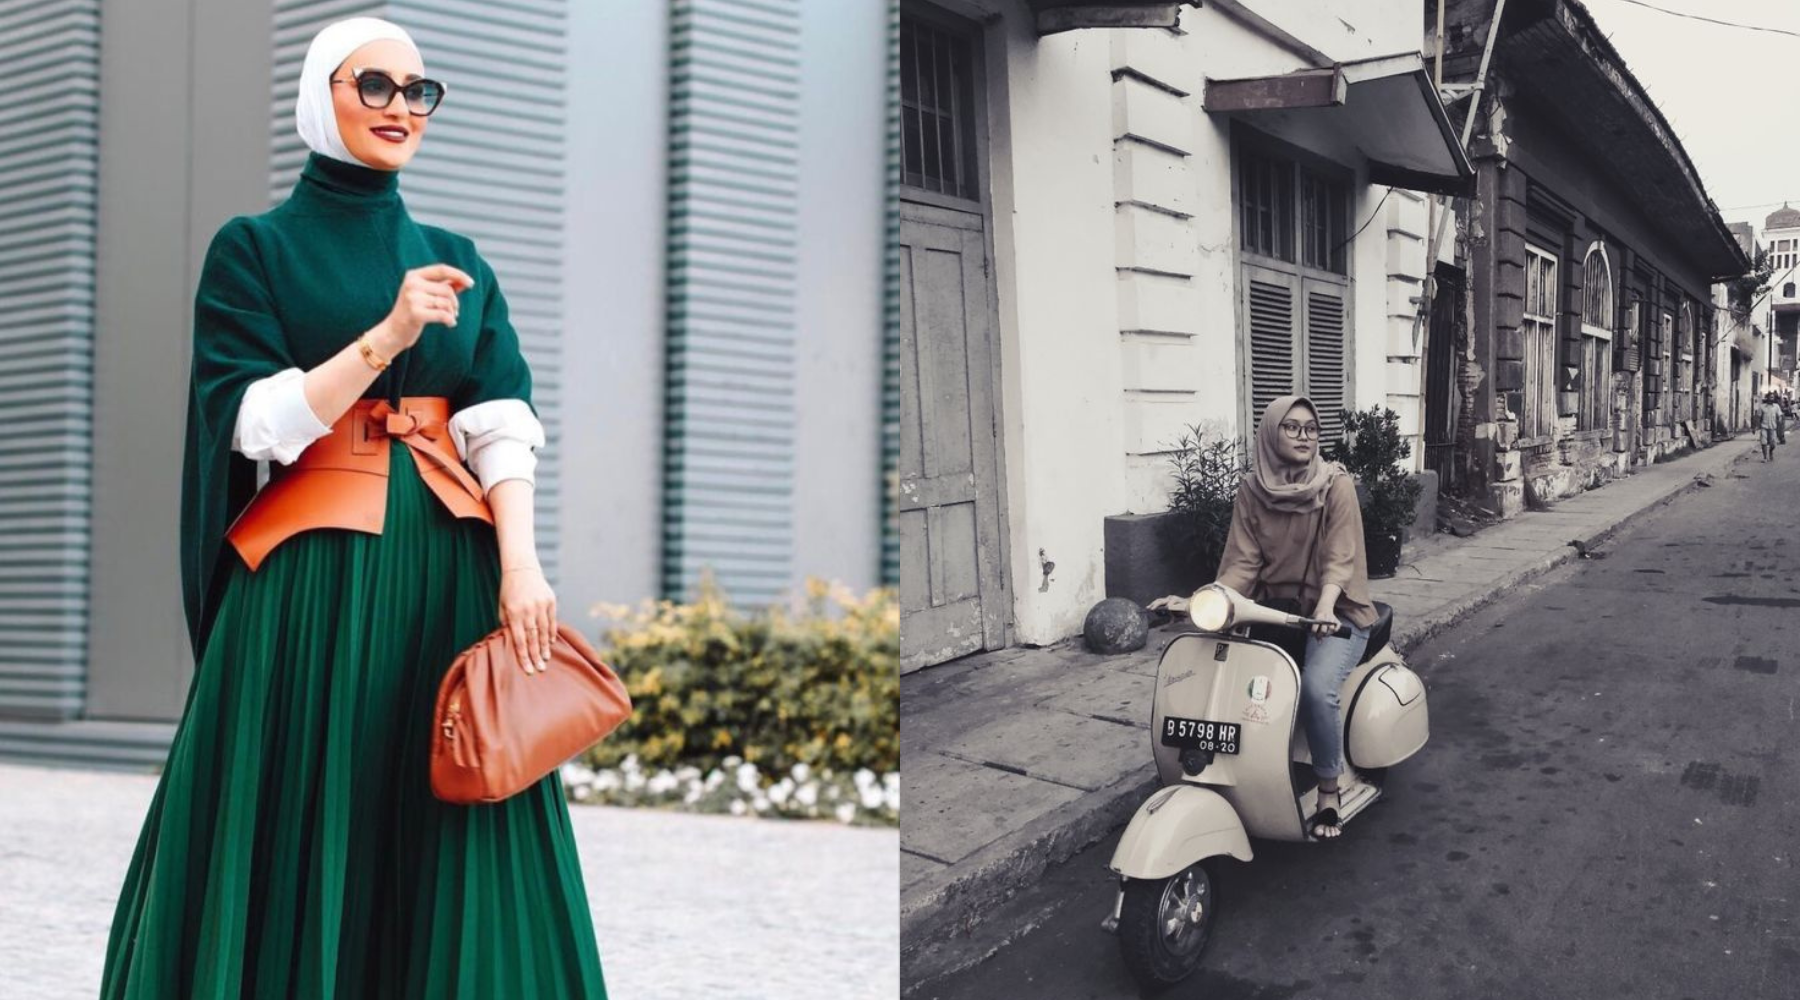 Rekomendasi Outfit dan Properti yang Instagramable untuk Foto OOTD Hijab Aesthetic!